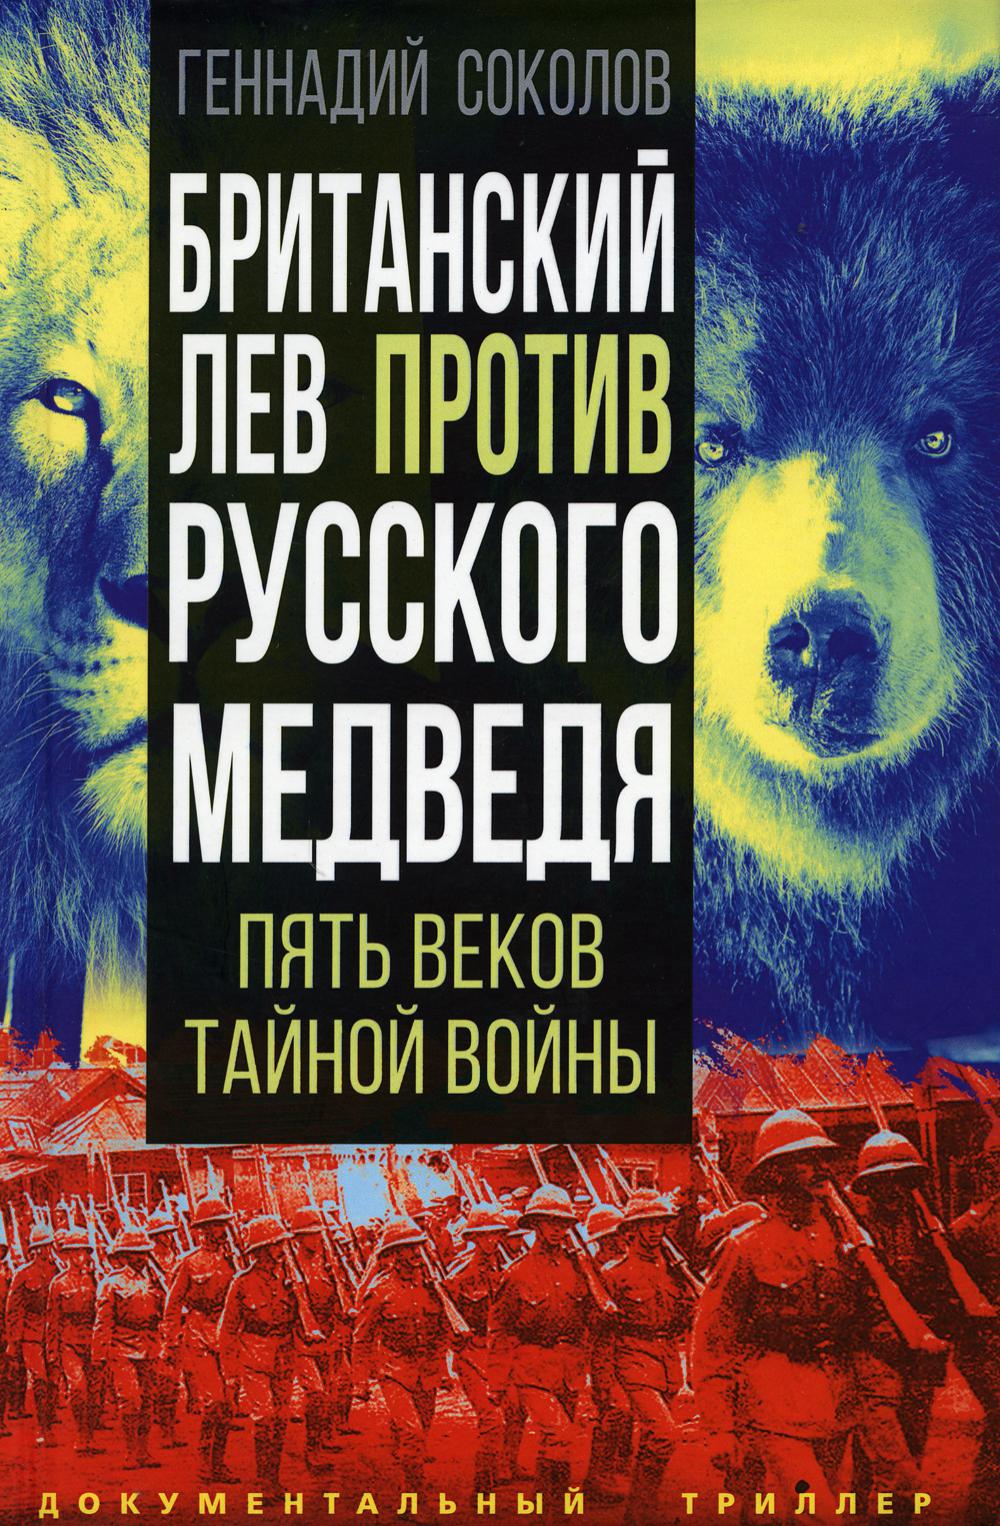 Британский лев против русского медведя. Пять веков тайной войны